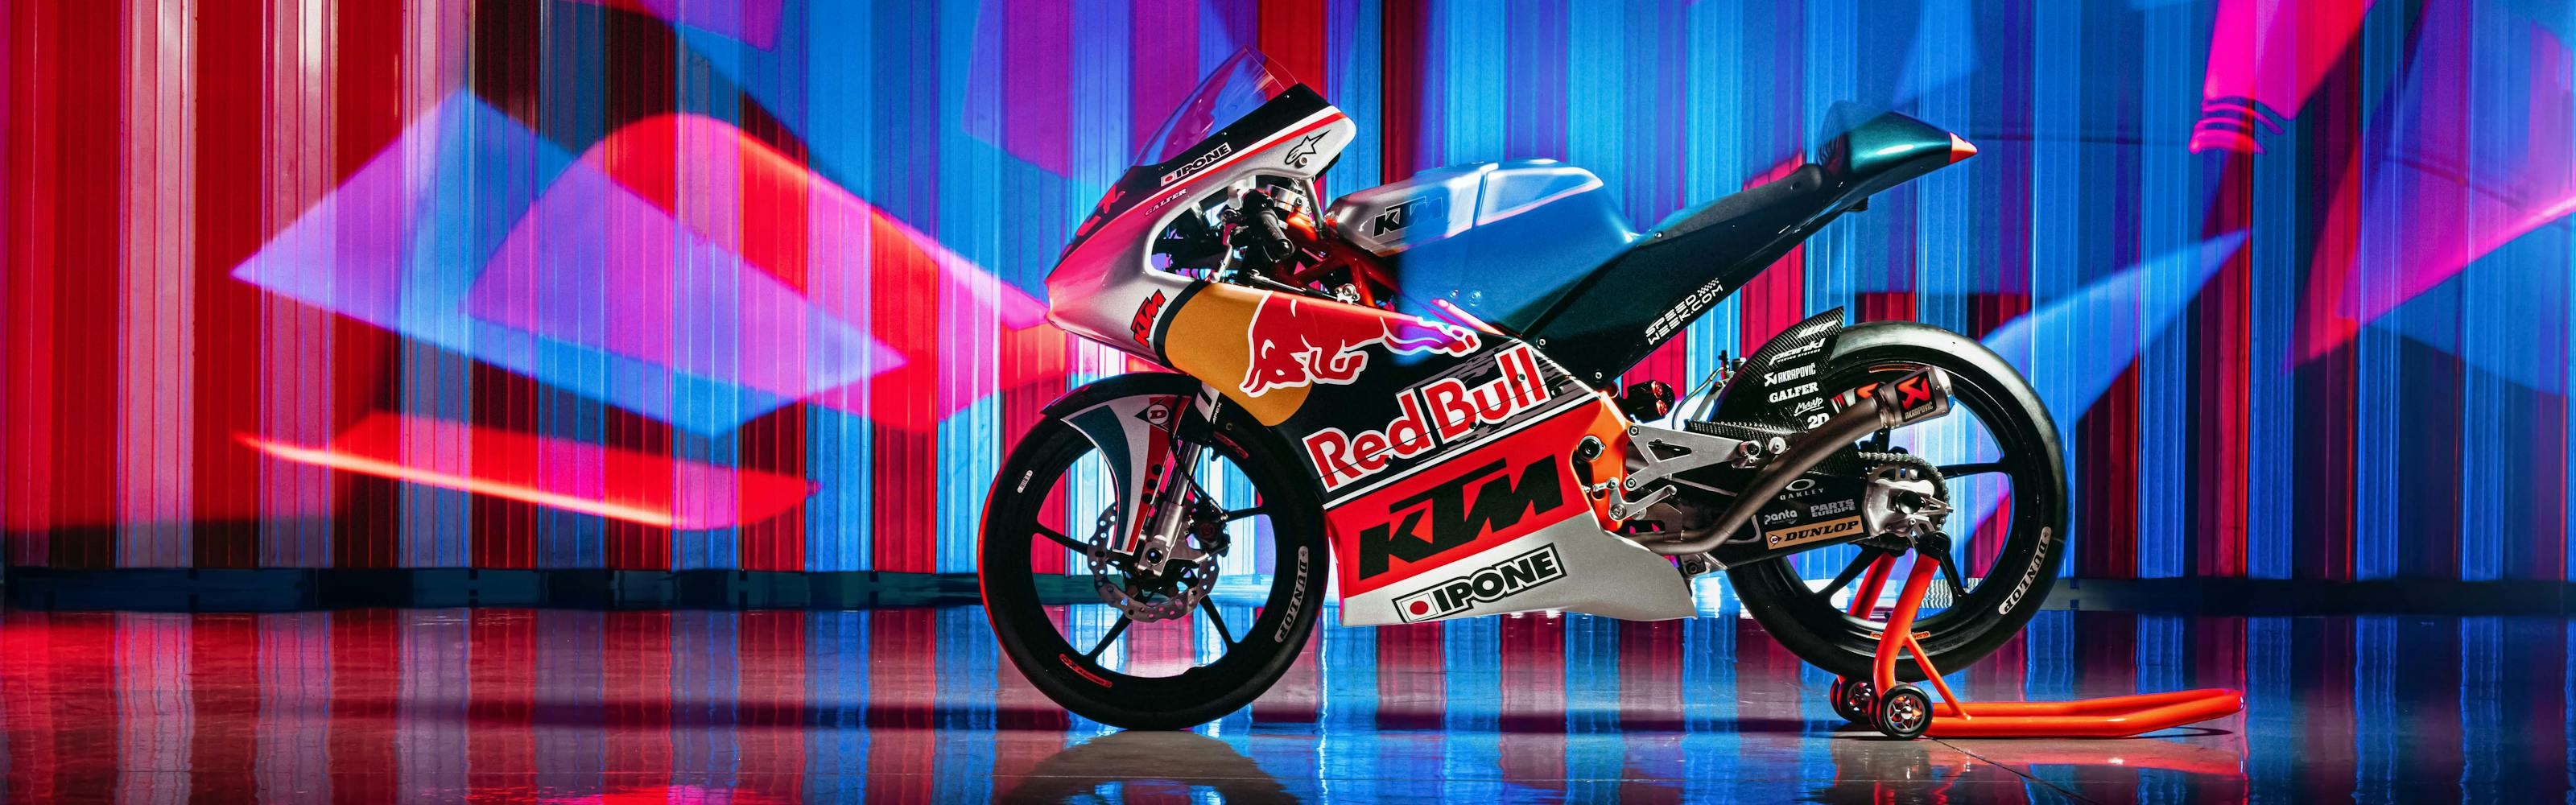 Red Bull MotoGP Rookies Cup: del sueño a la realidad